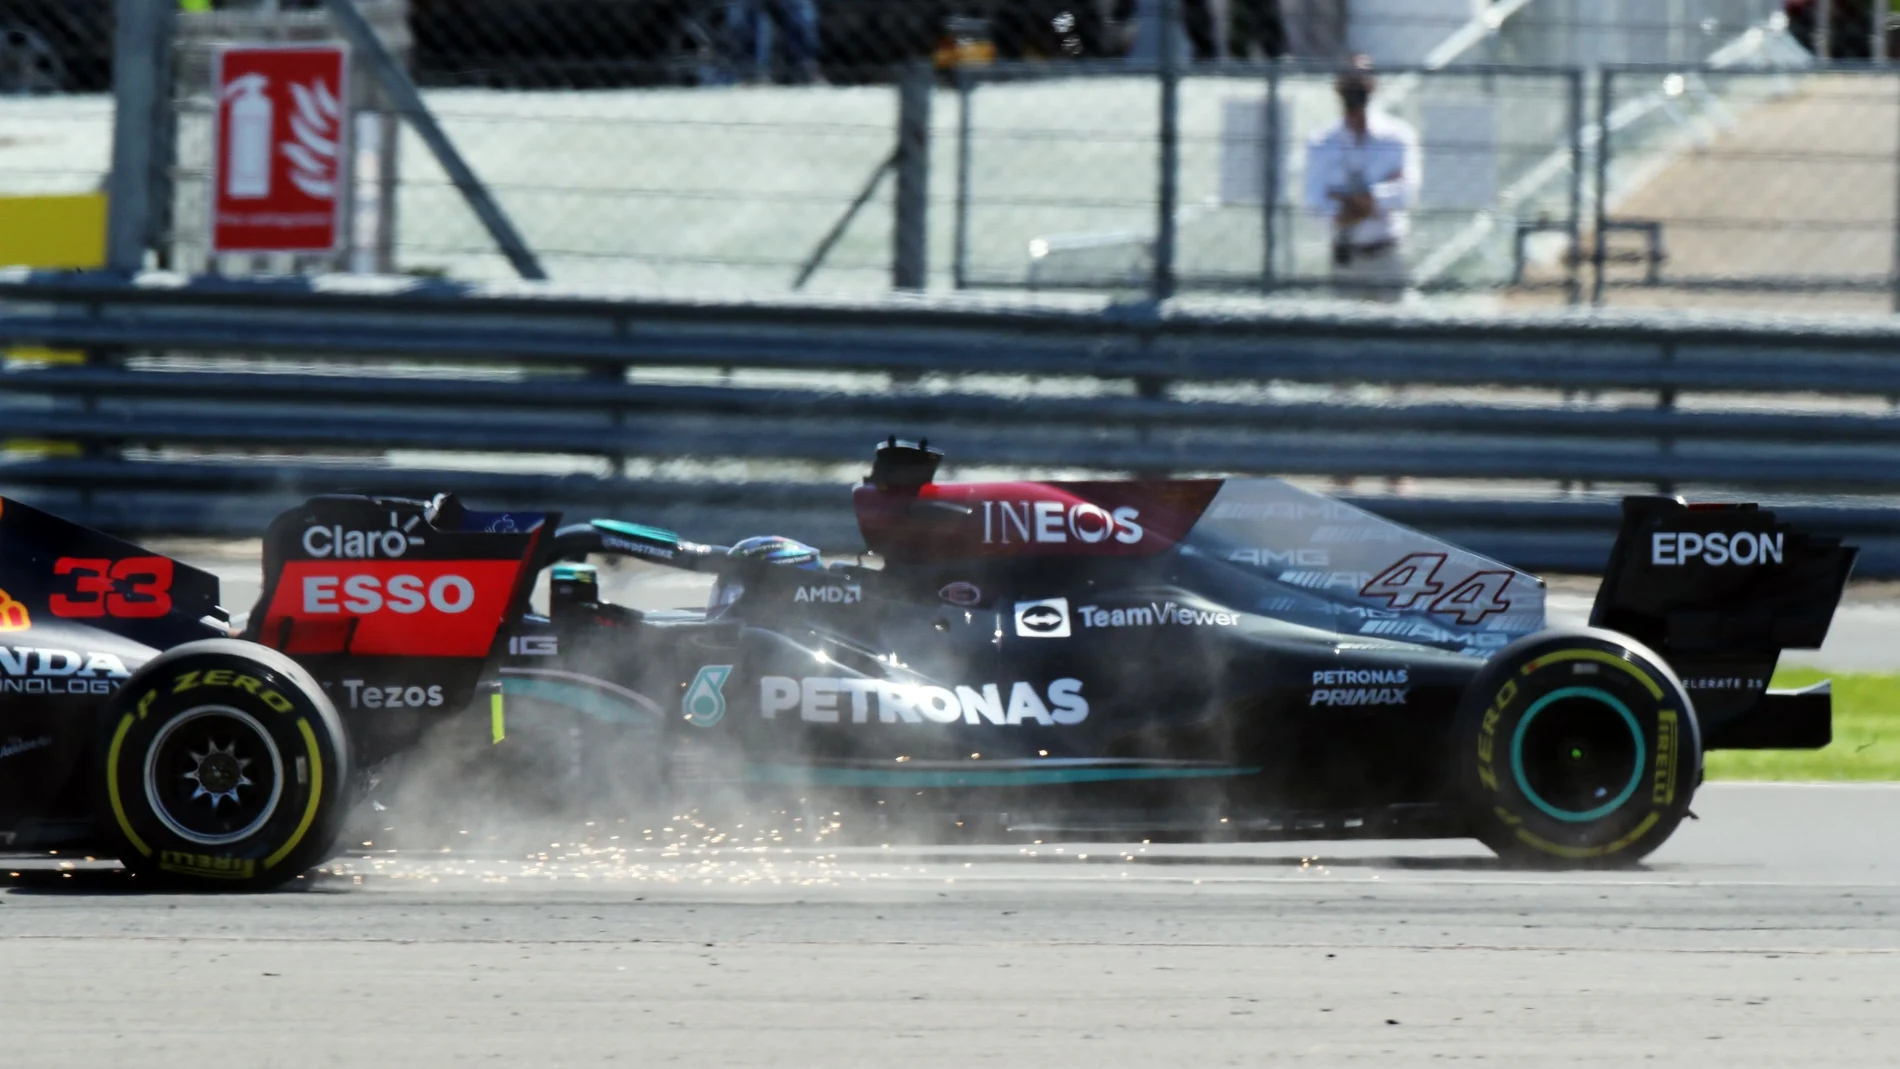 El momento del choque entre Max Verstappen y Lewis Hamilton en Silverstone